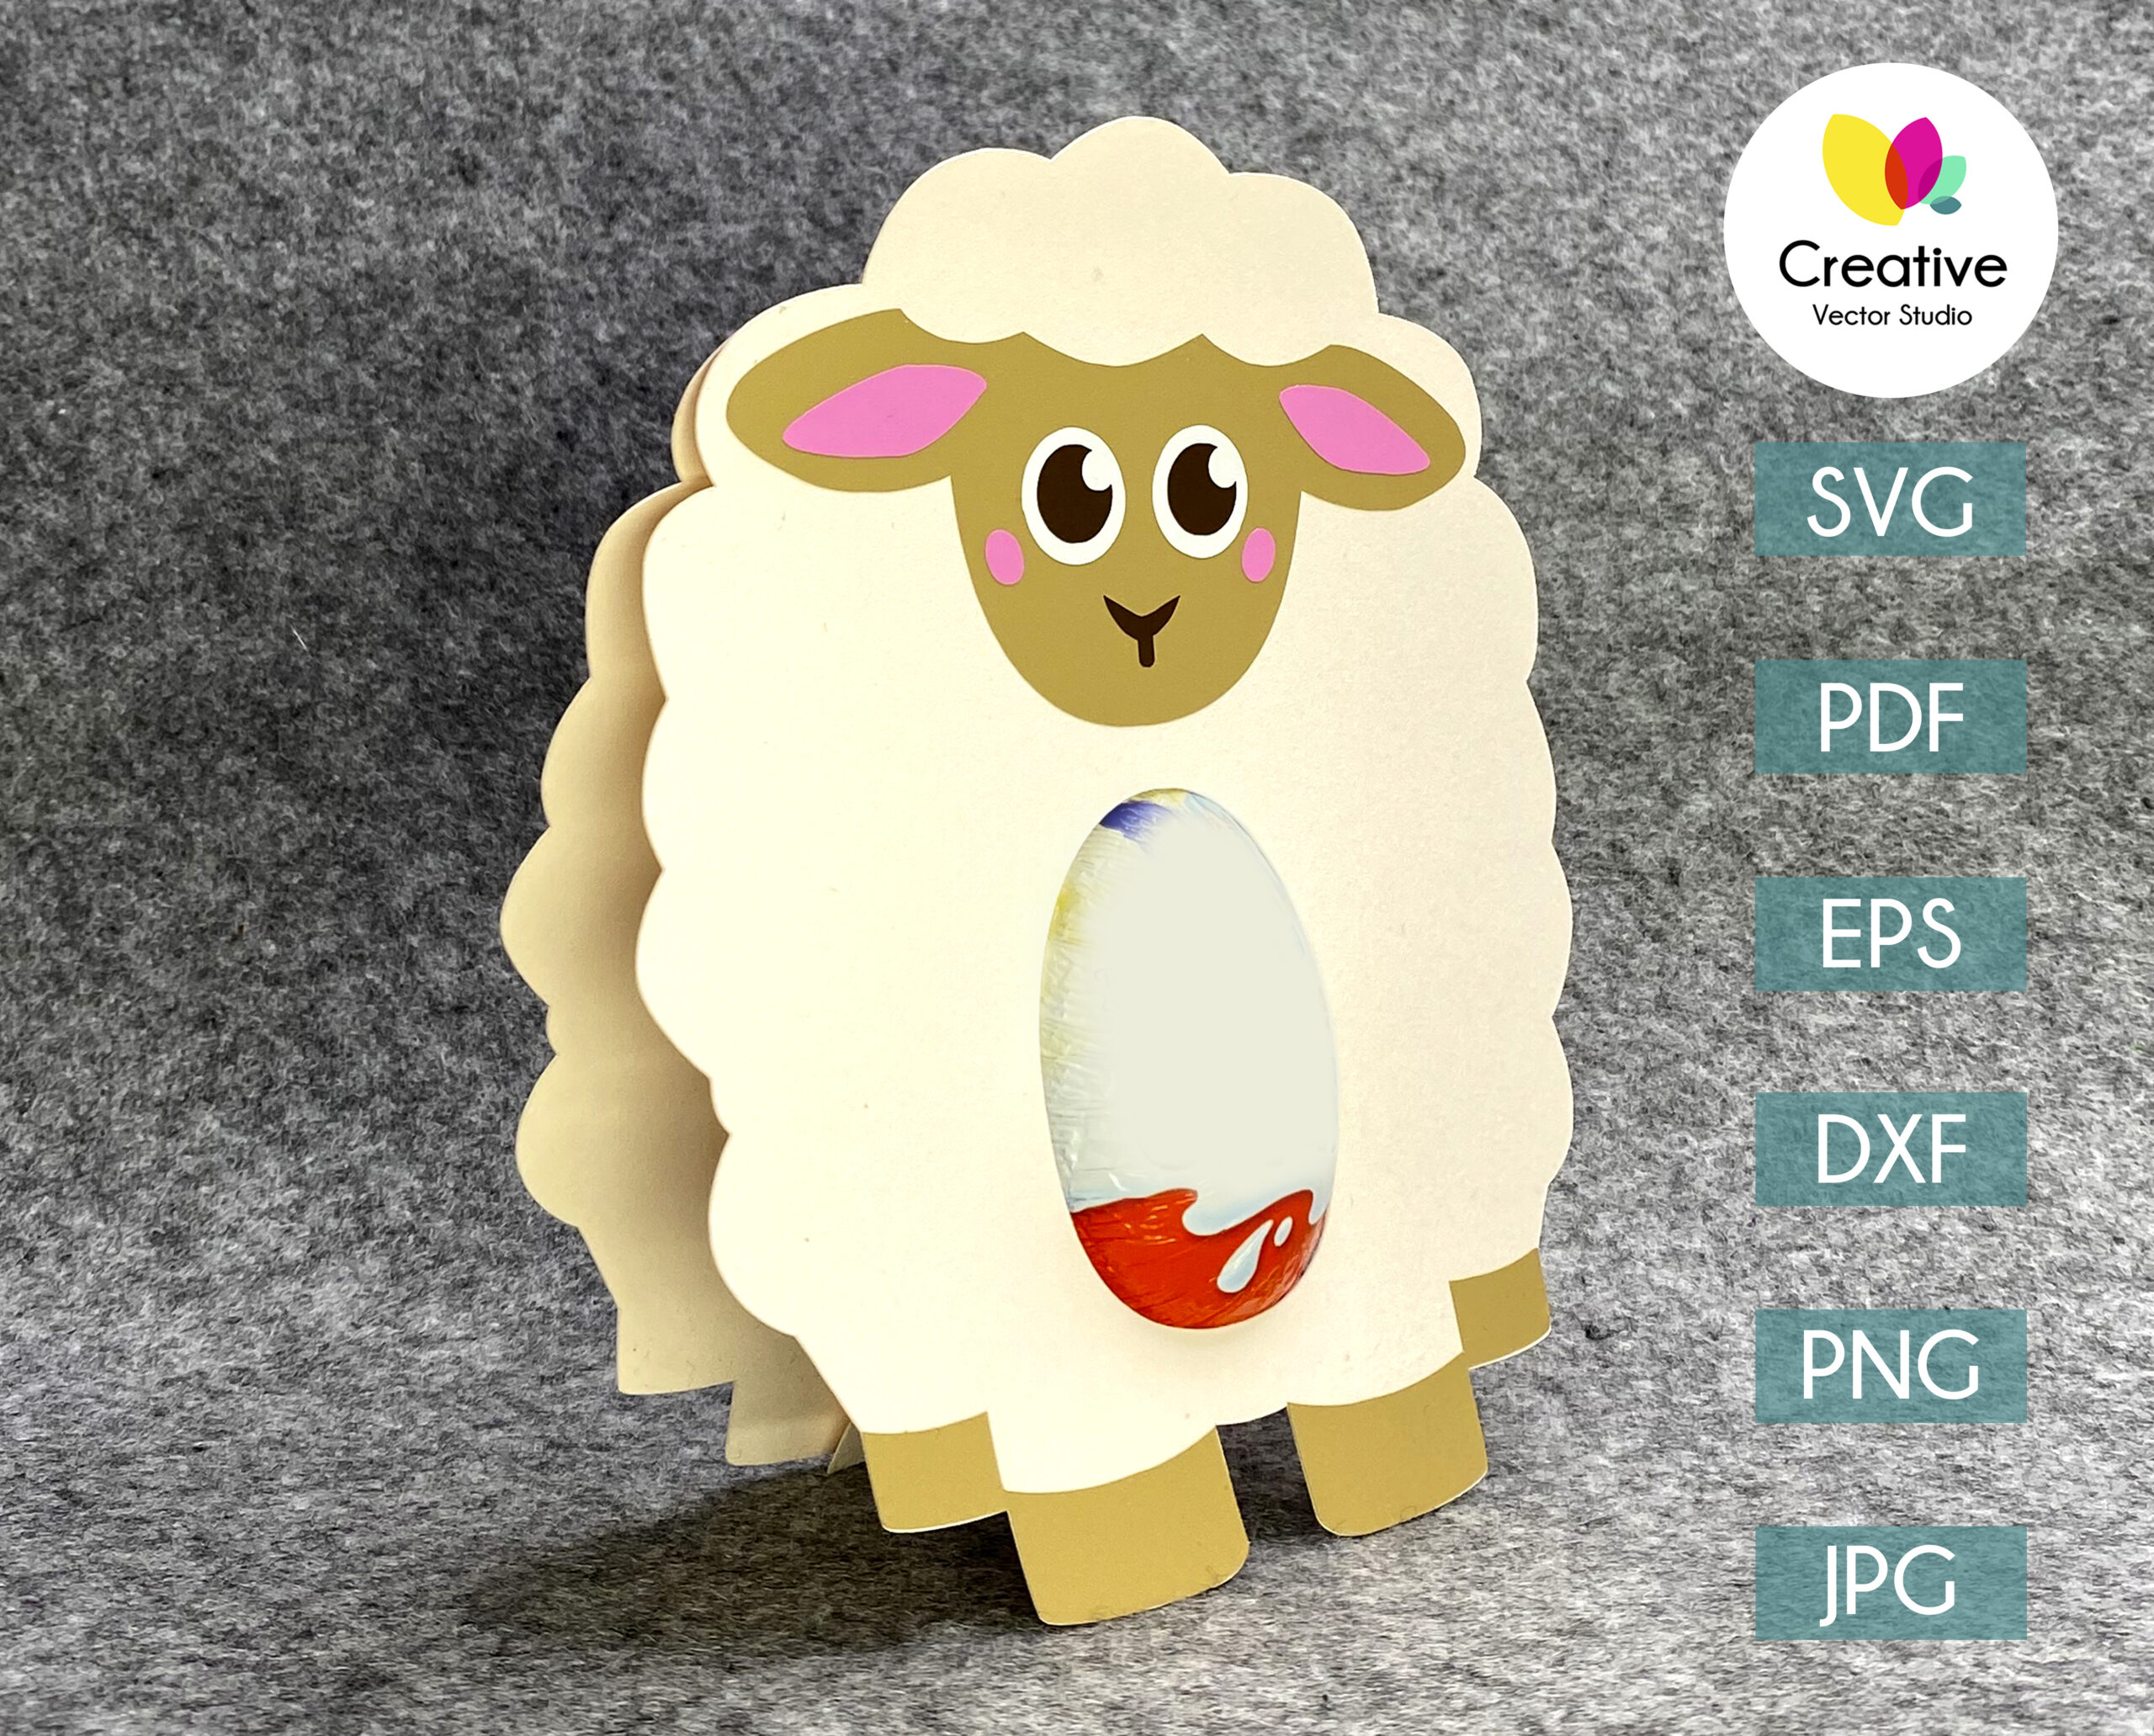 Download Sheep Egg Holder Svg Pdf Png Eps Creative Vector Studio